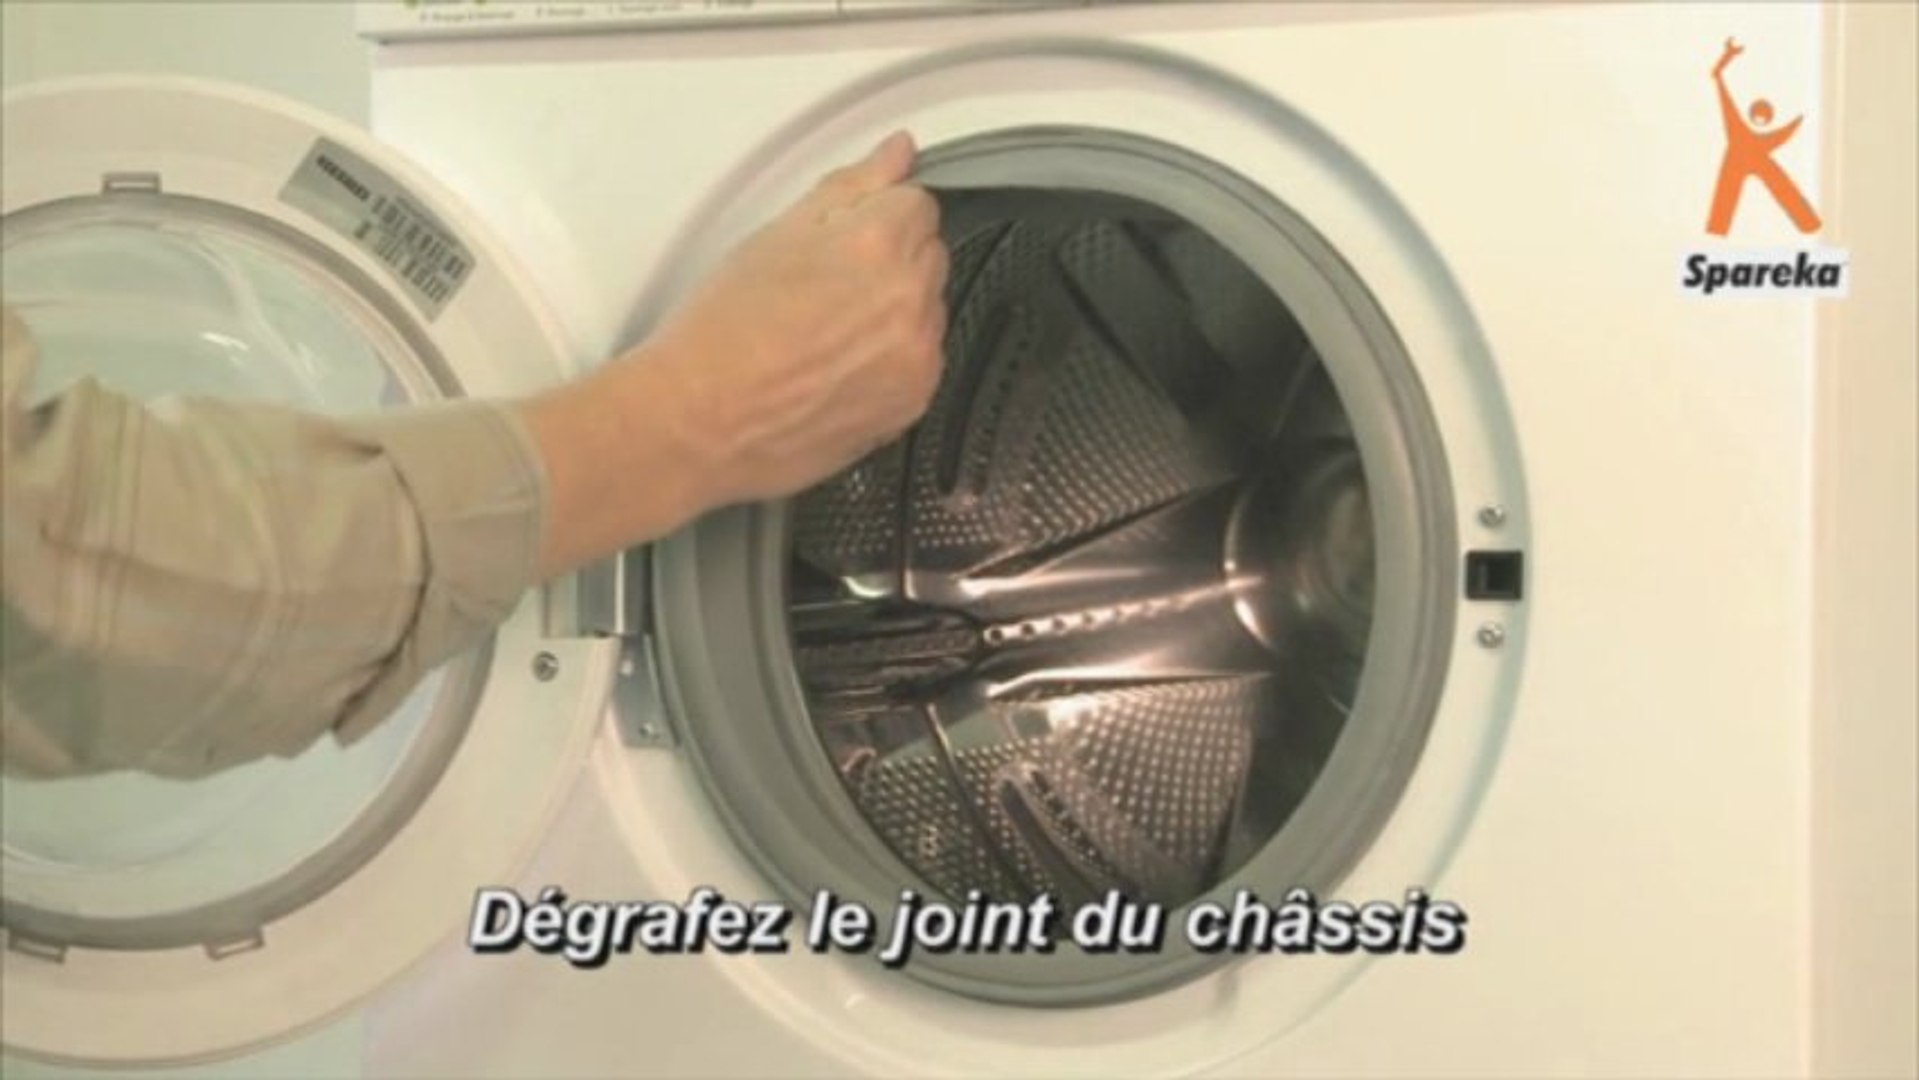 Remplacer la manchette de votre machine à laver - Vidéo Dailymotion